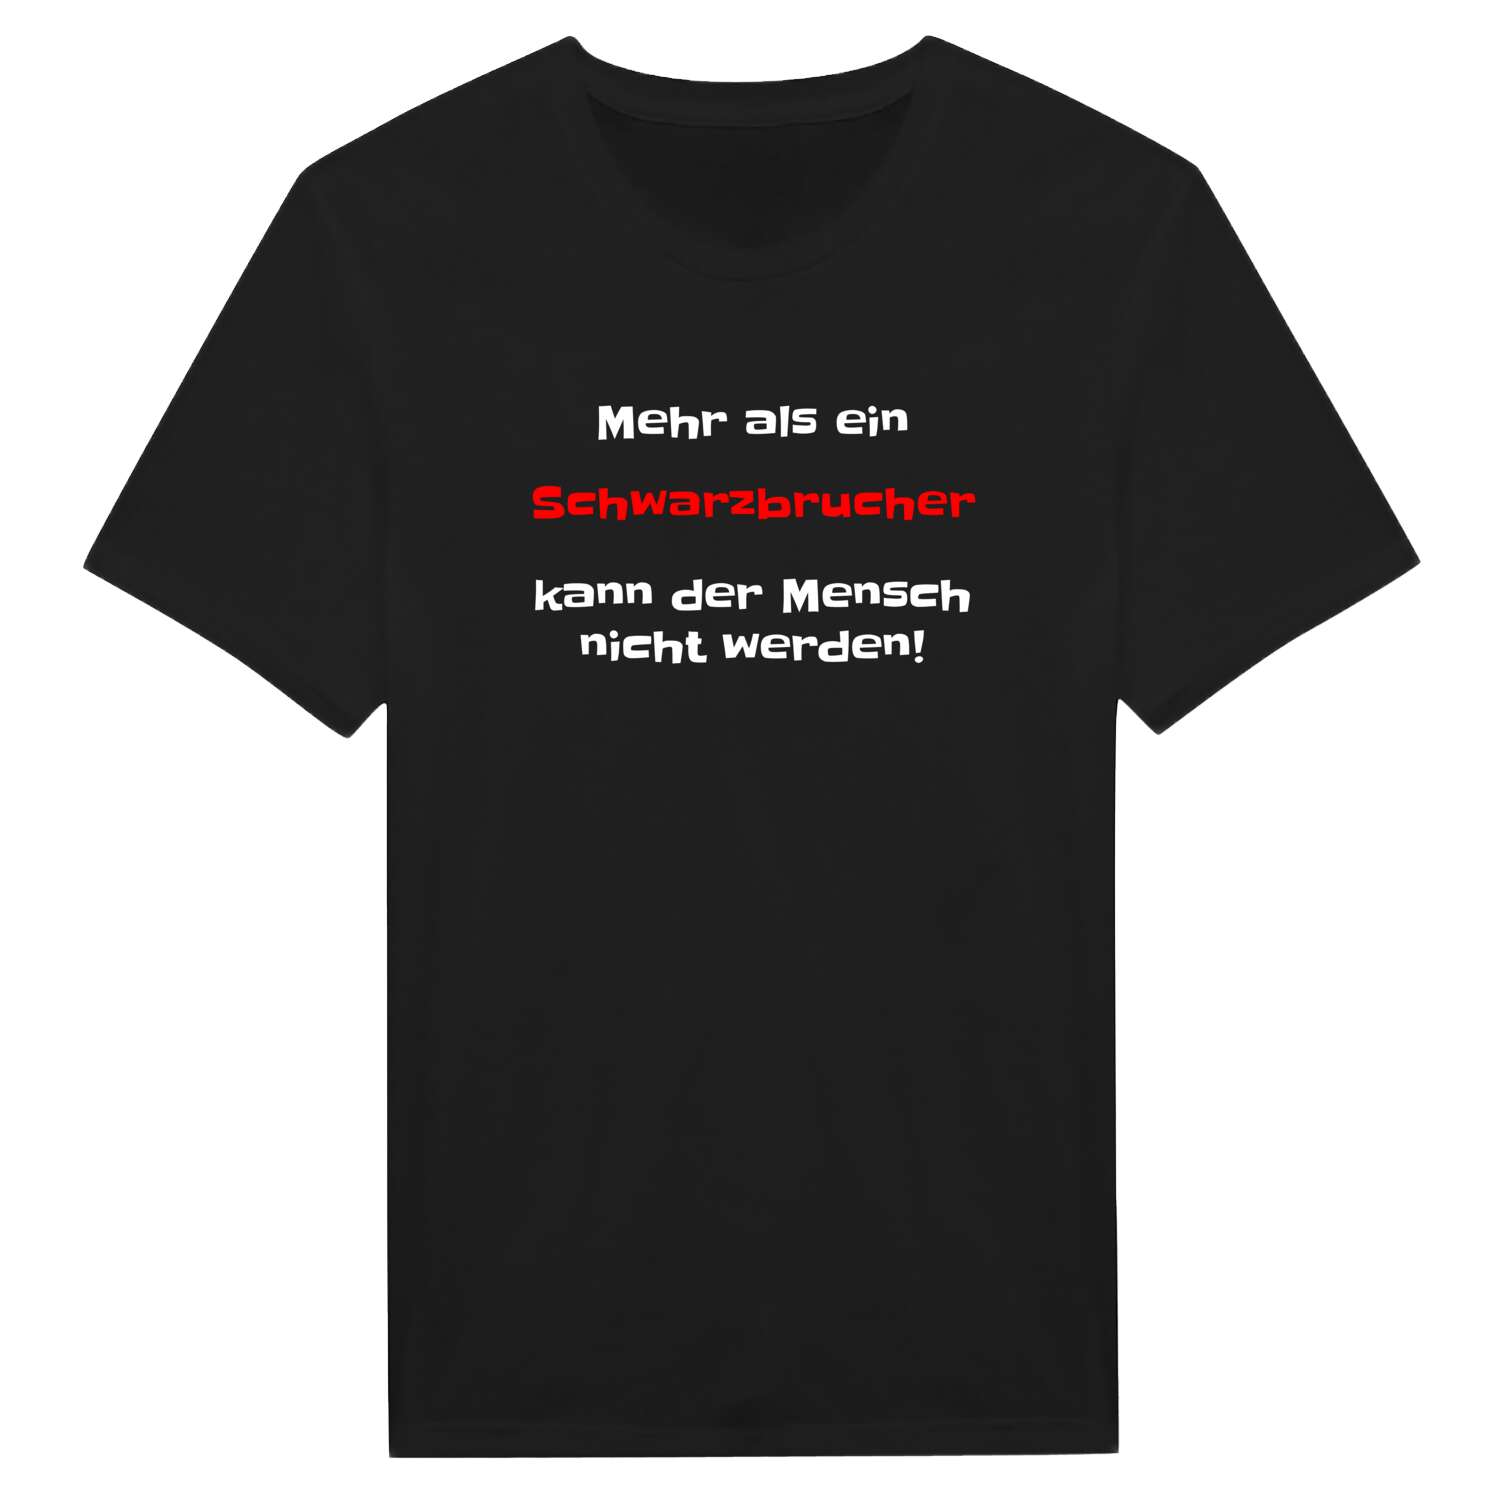 Schwarzbruch T-Shirt »Mehr als ein«